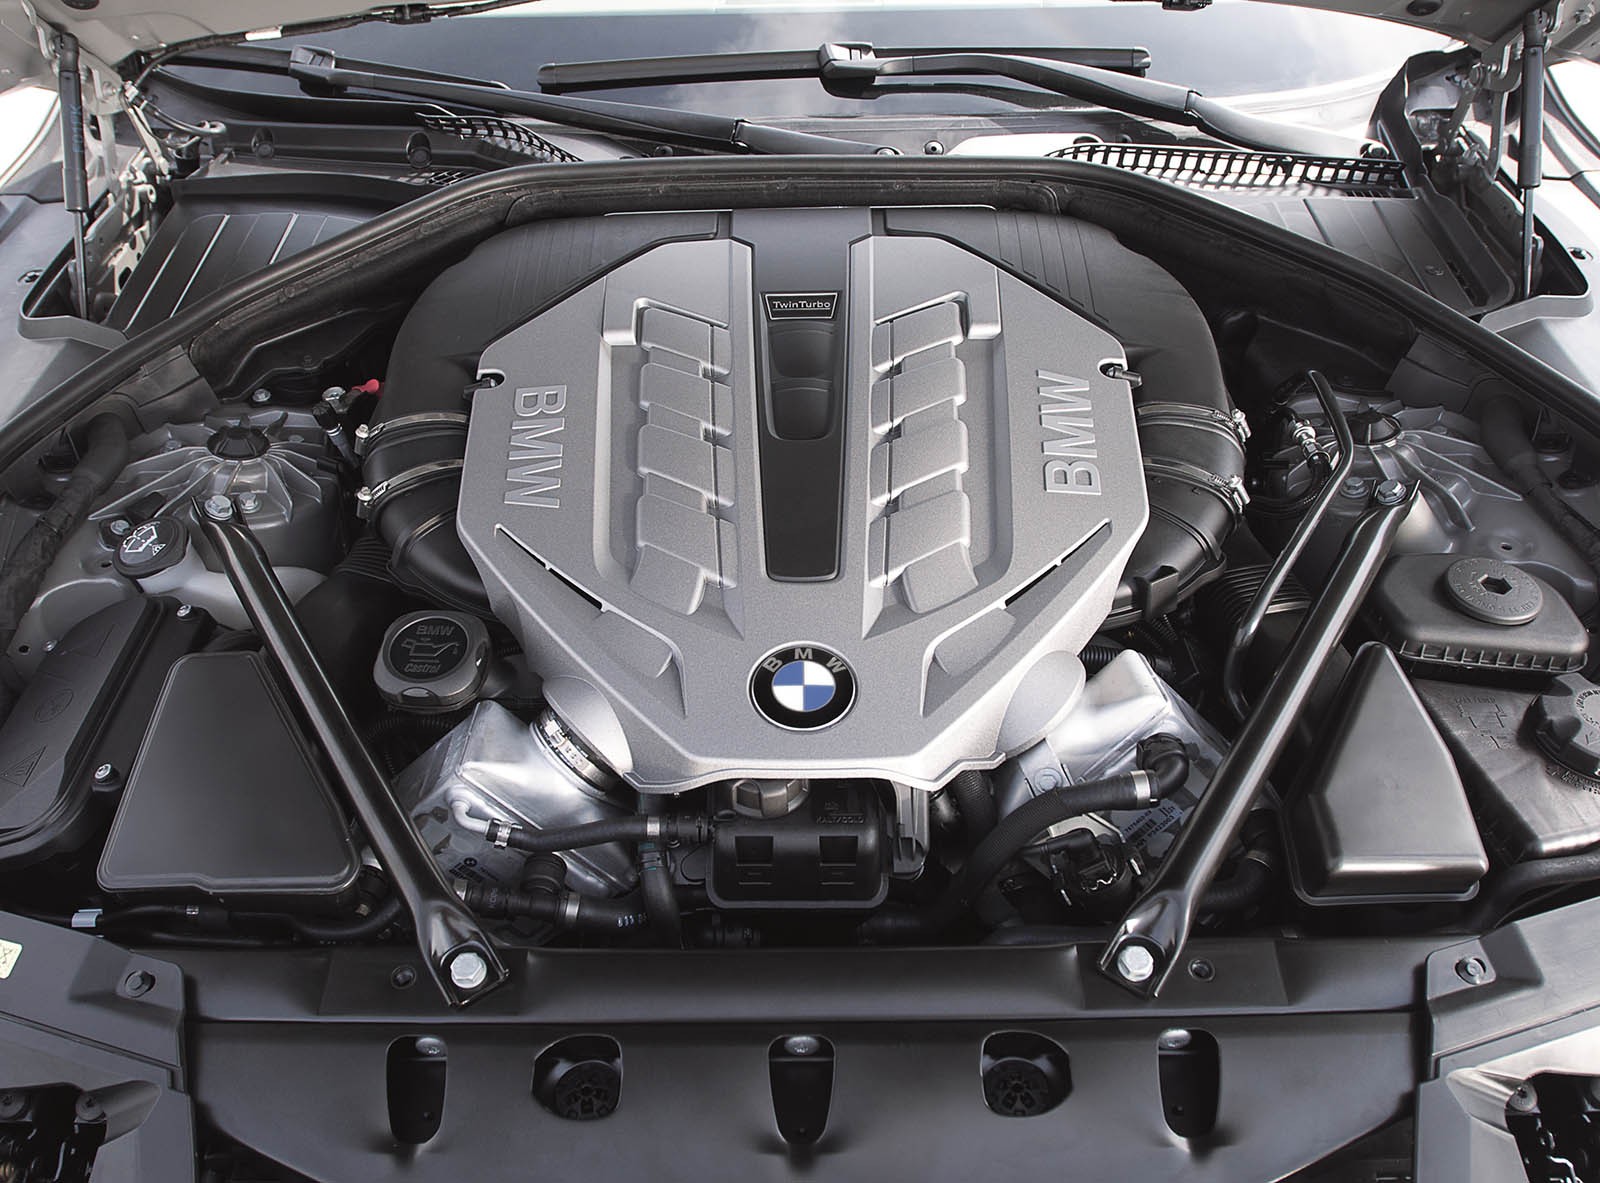 BMW 7er F01 с пробегом: умная подвеска, горячий V8 и космические бюджеты на ремонт